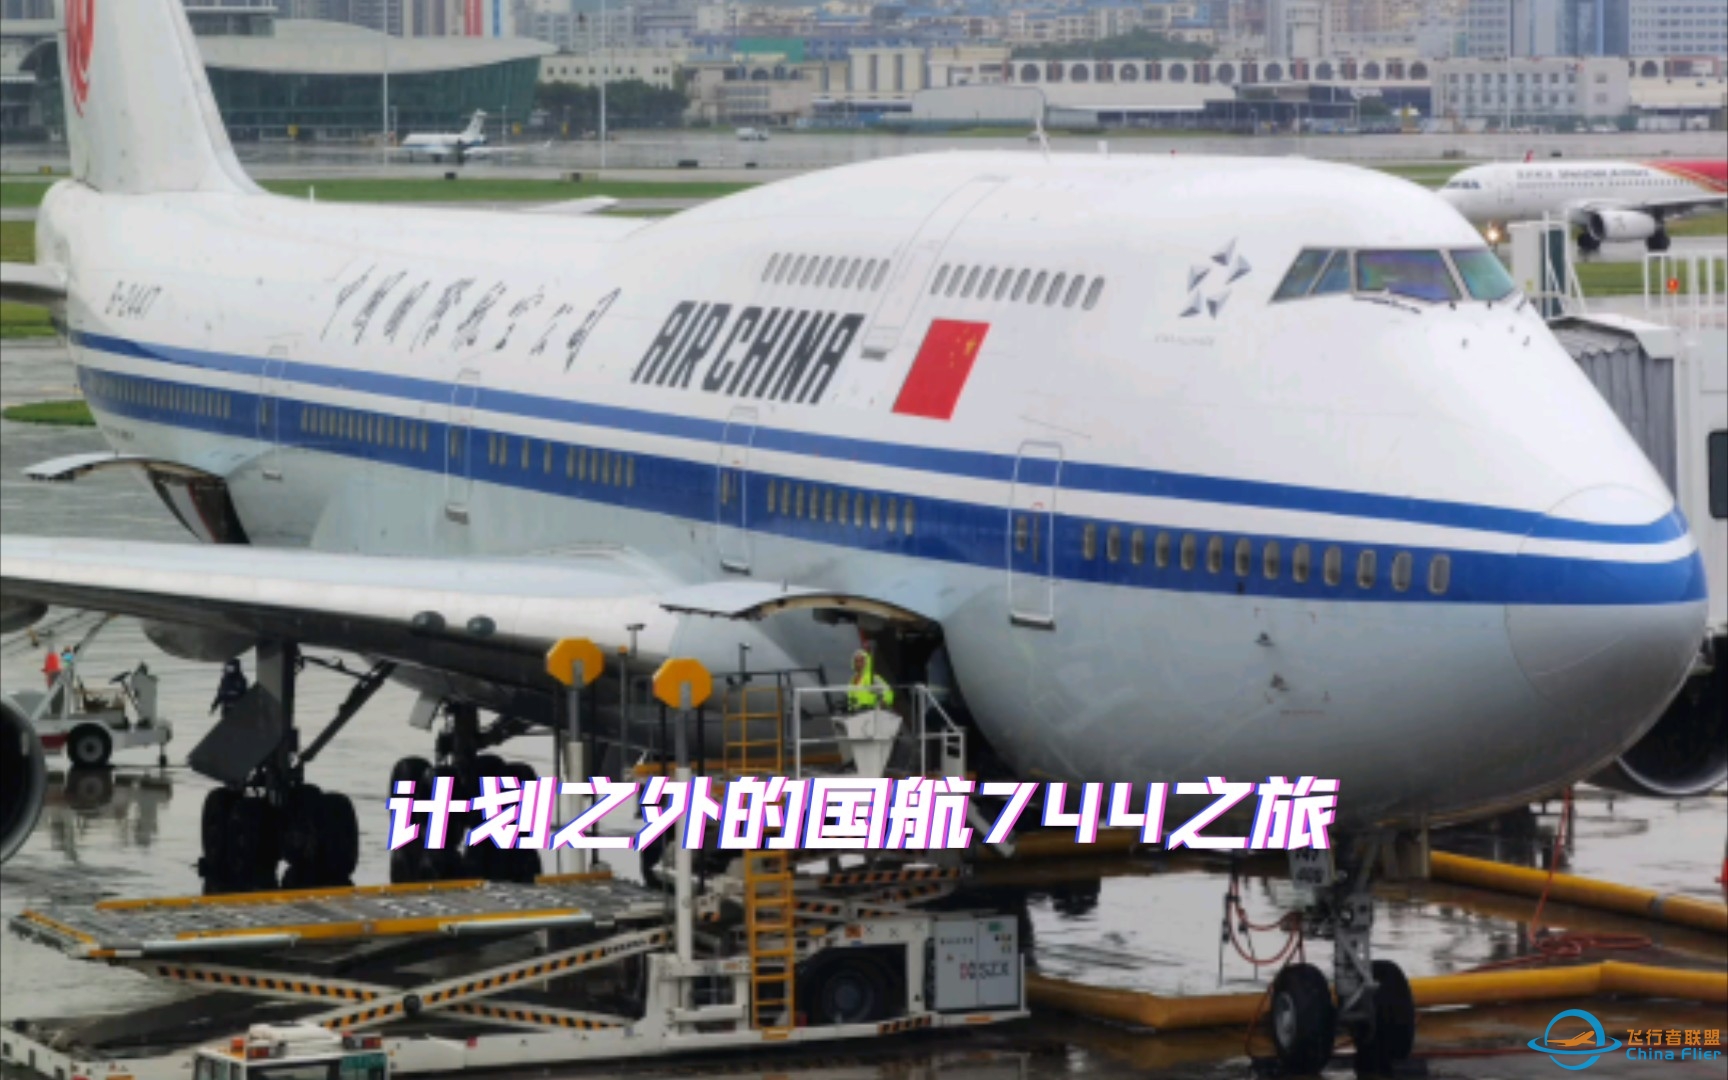 从机龄0.6年到28.6年，原本想体验深航最新空客A321NX，却意外坐上国航第二老的波音747-400（B-2447）-5707 